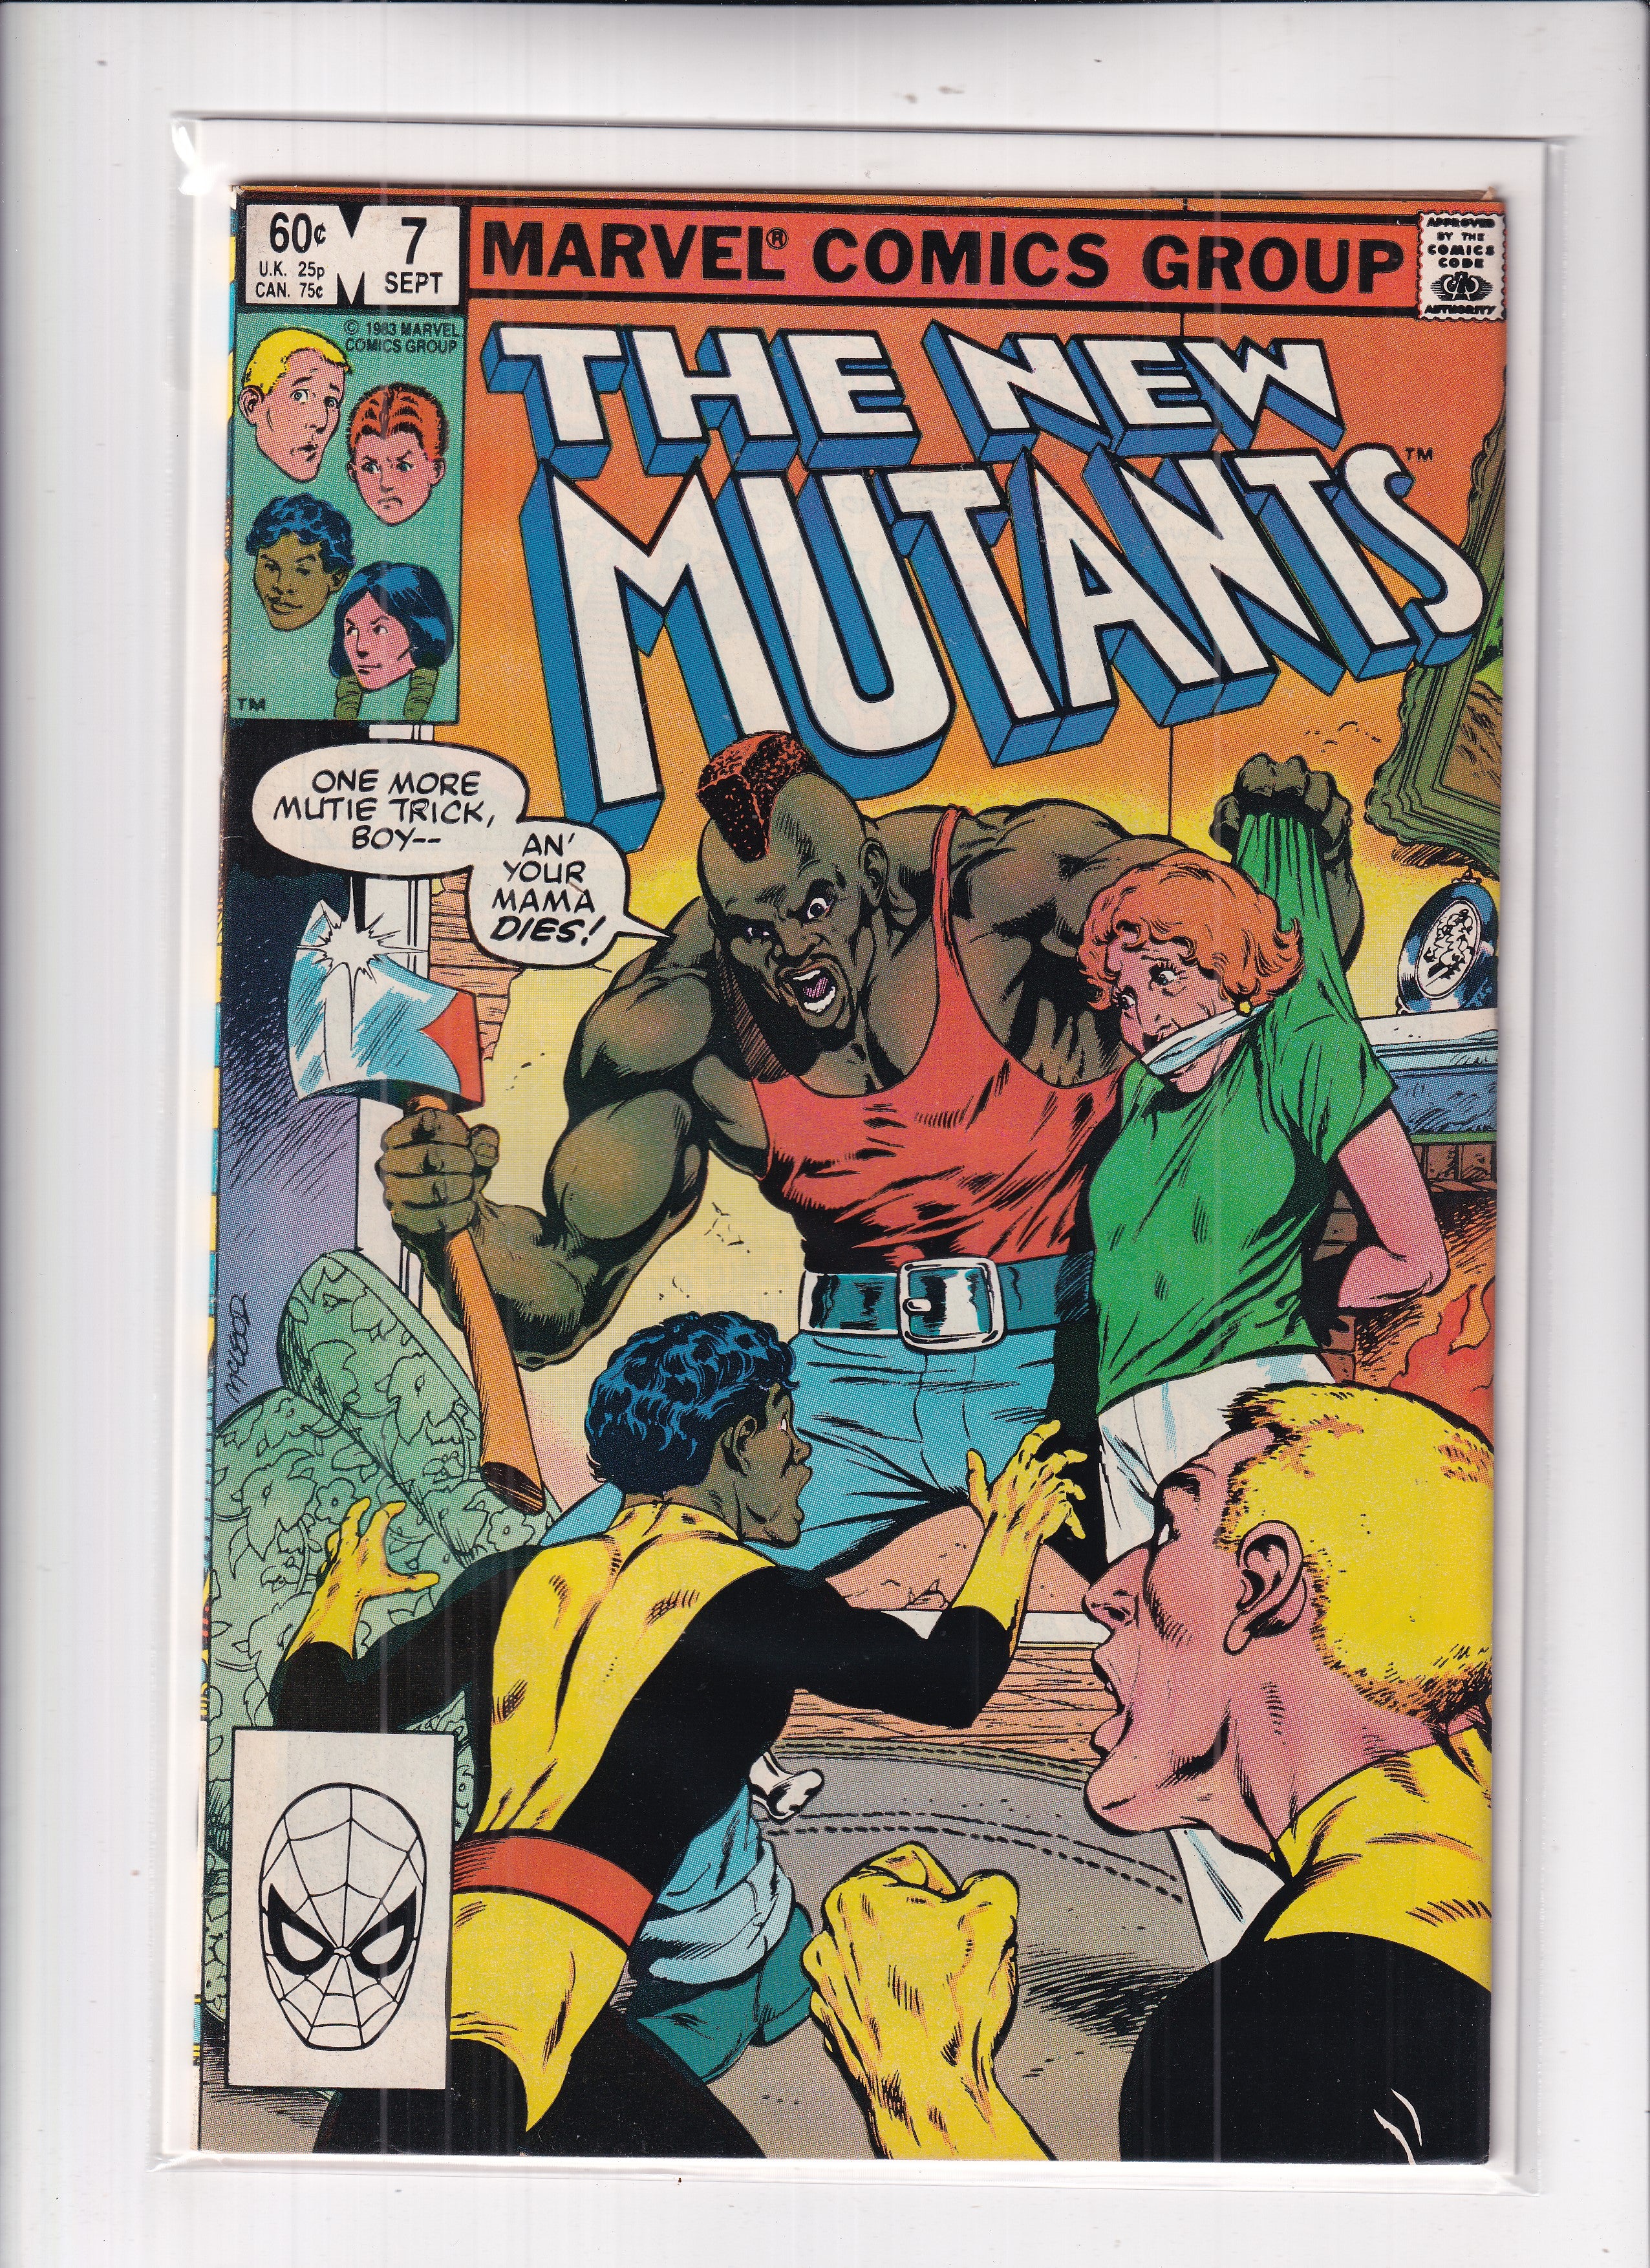 New Mutants #7